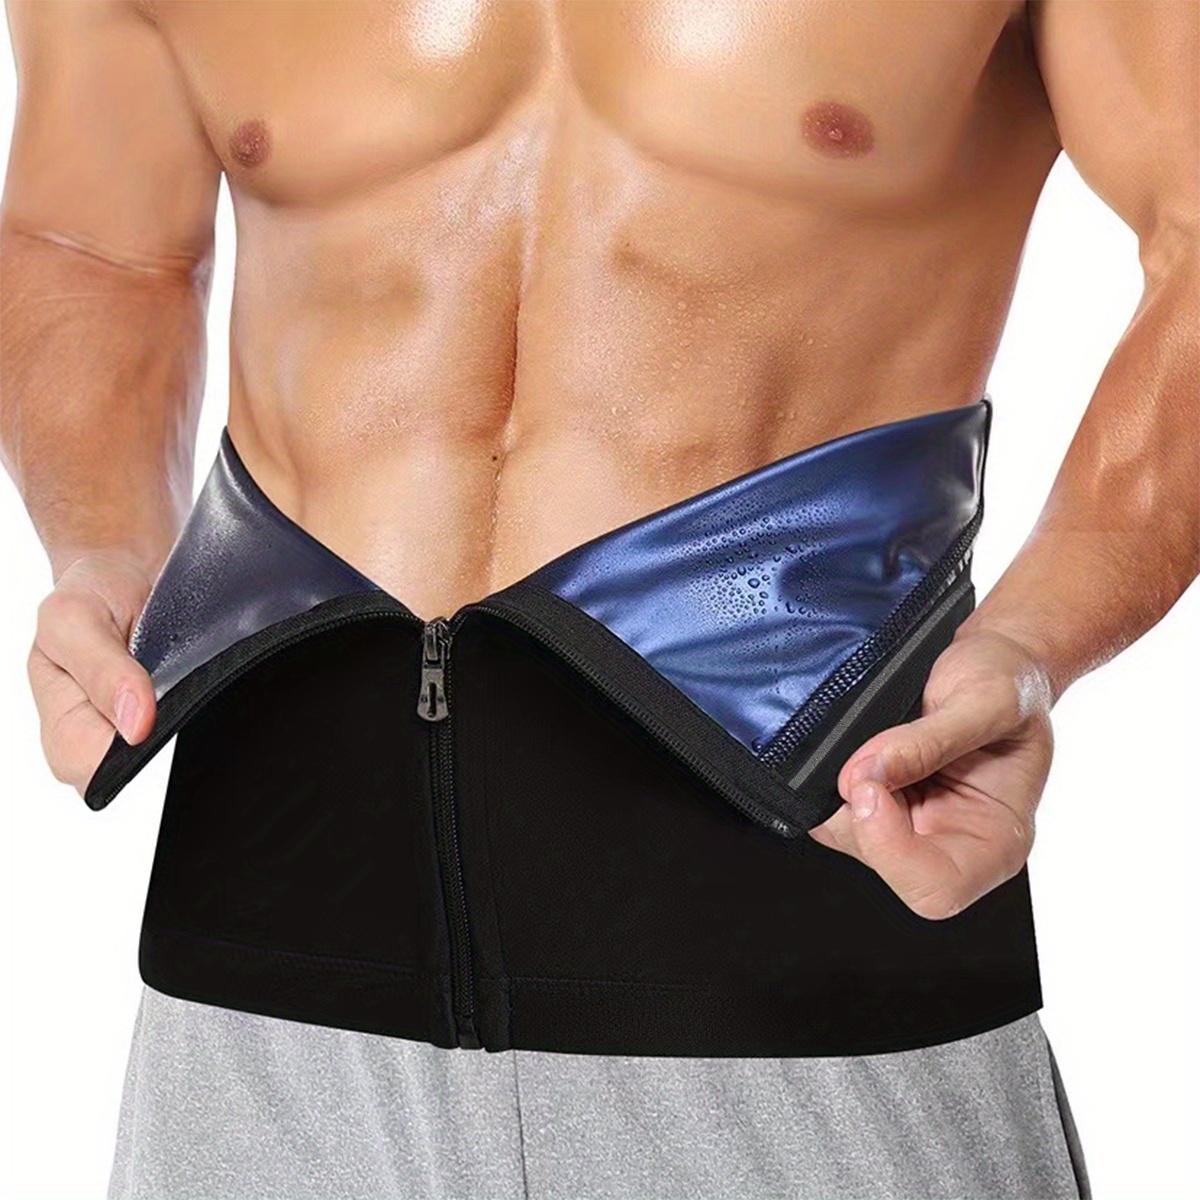 CityMingle™ Sweat Belt - Hot Body Shaper Belly Fat Burner For Men & Wo –  City Mingle